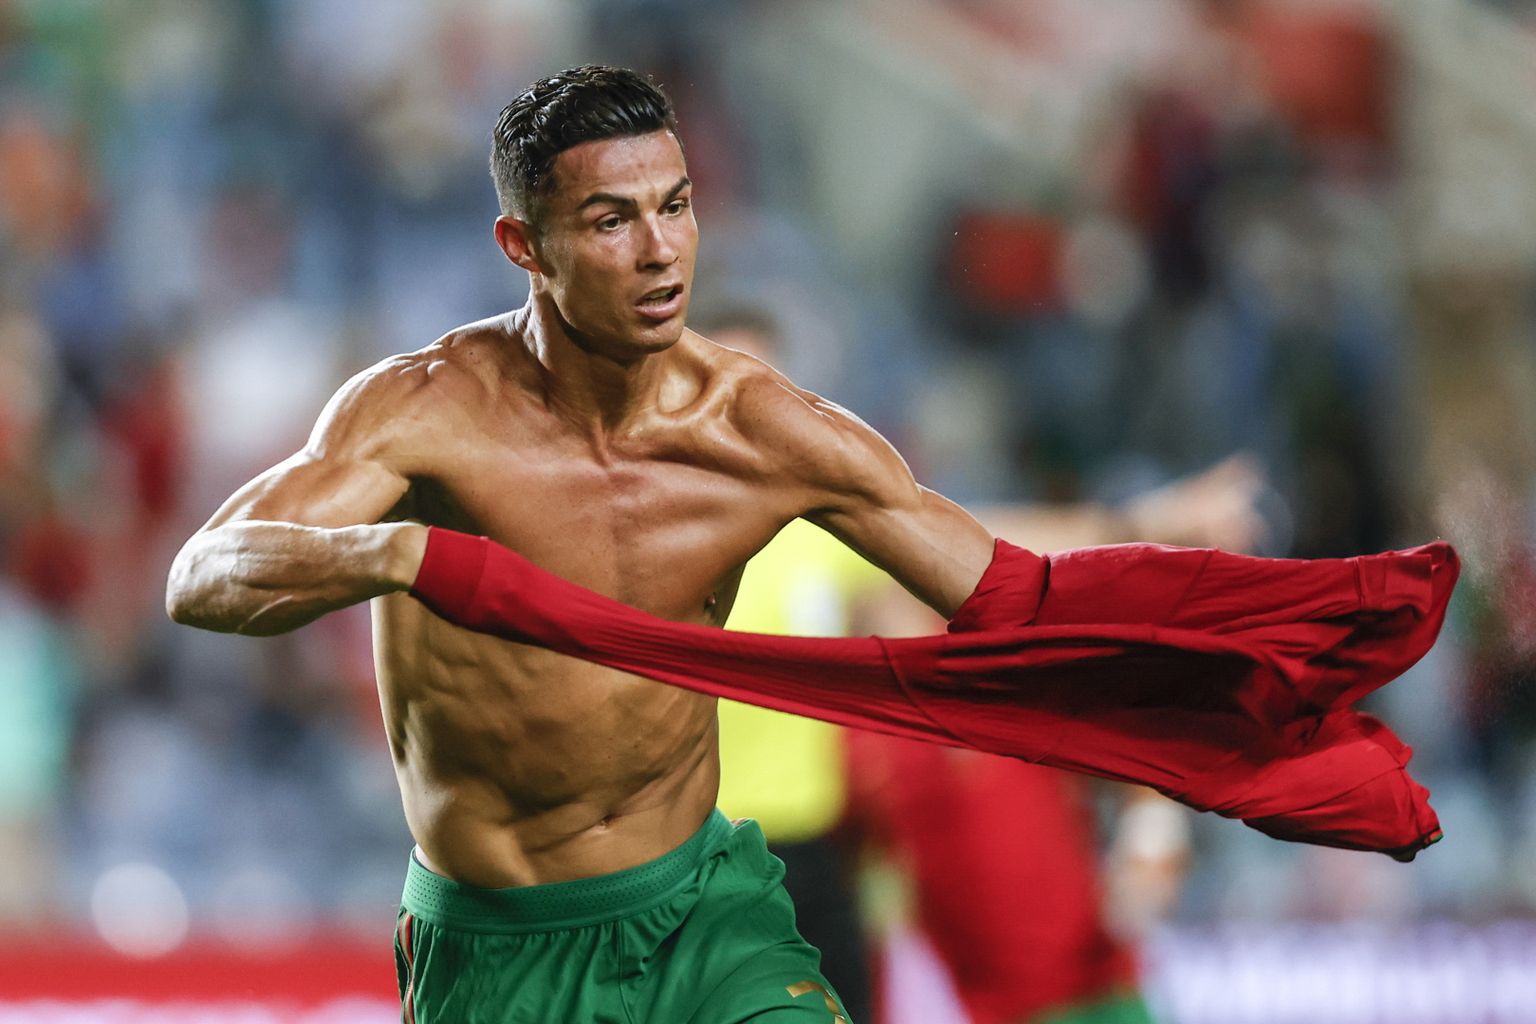 Cristiano Ronaldo on küll 36-aastane, kuid lööb väravaid endiselt vägeva hooga.